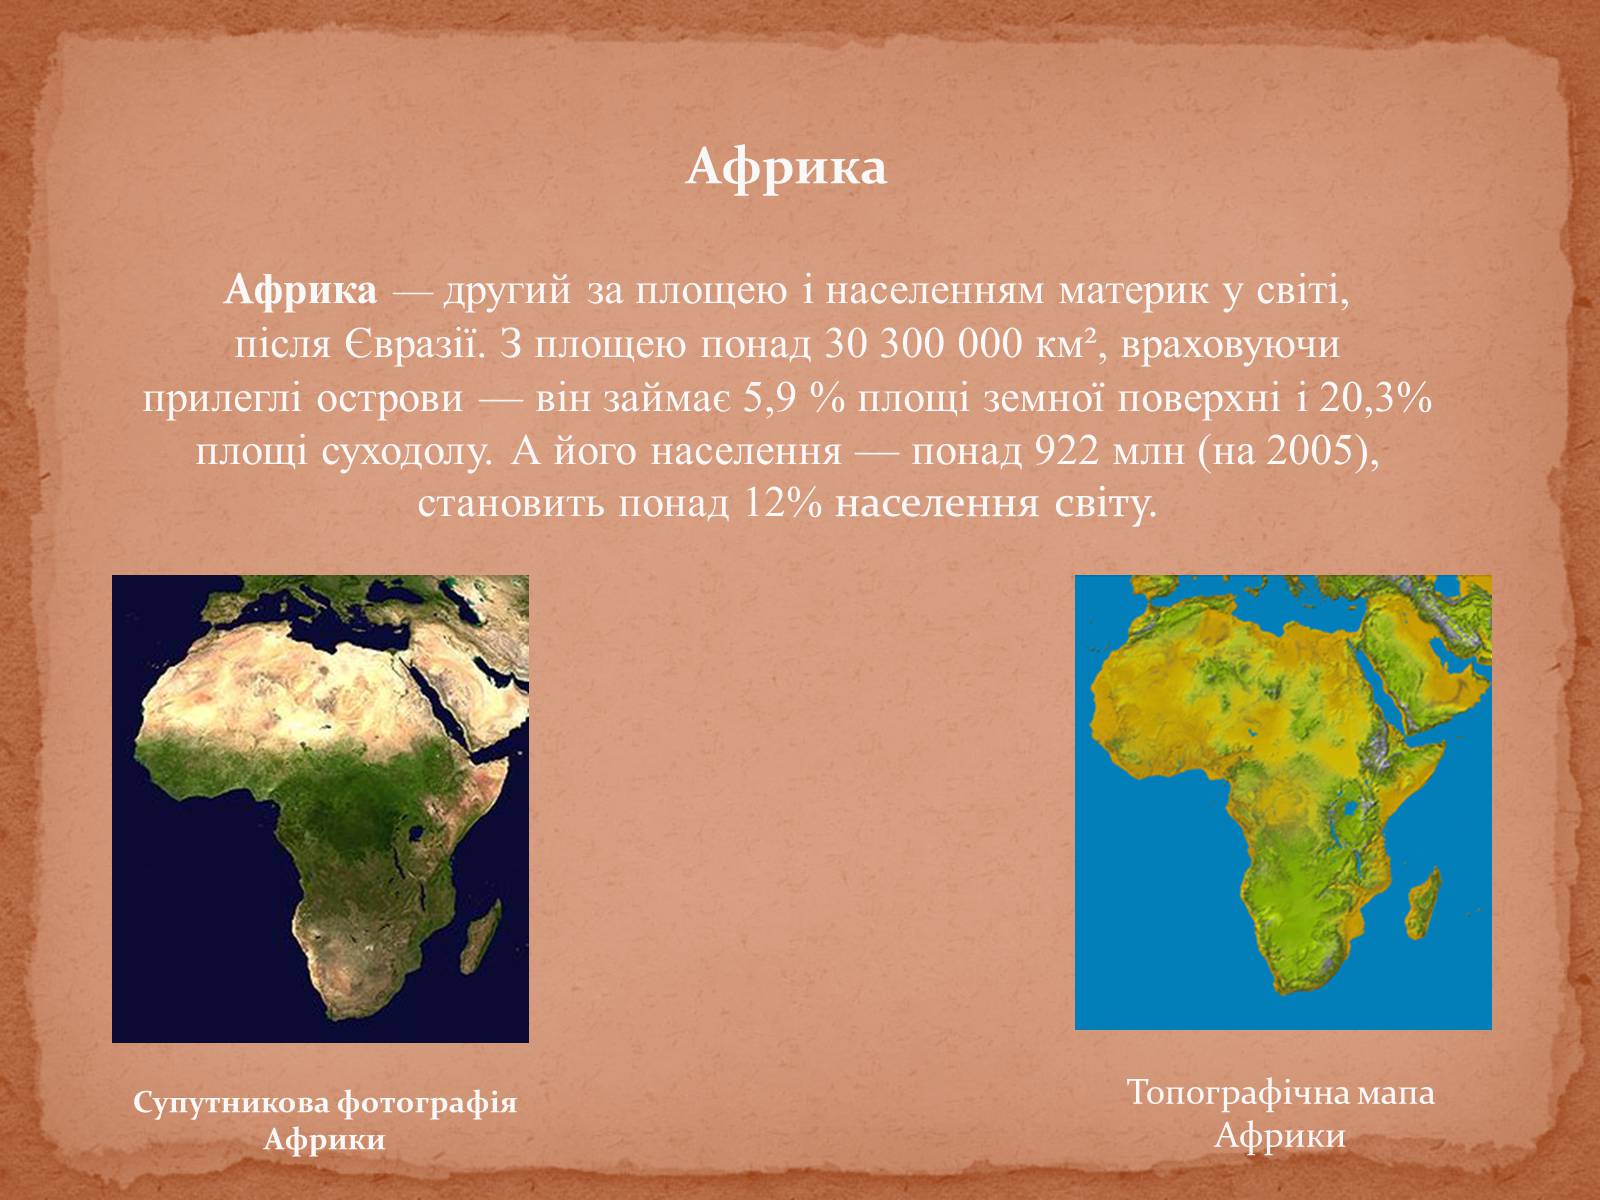 Какова роль африки в мире. Африка материк. Географическое положение Африки. Главный водораздел Африки. Материк Африка в коричневом цвете.